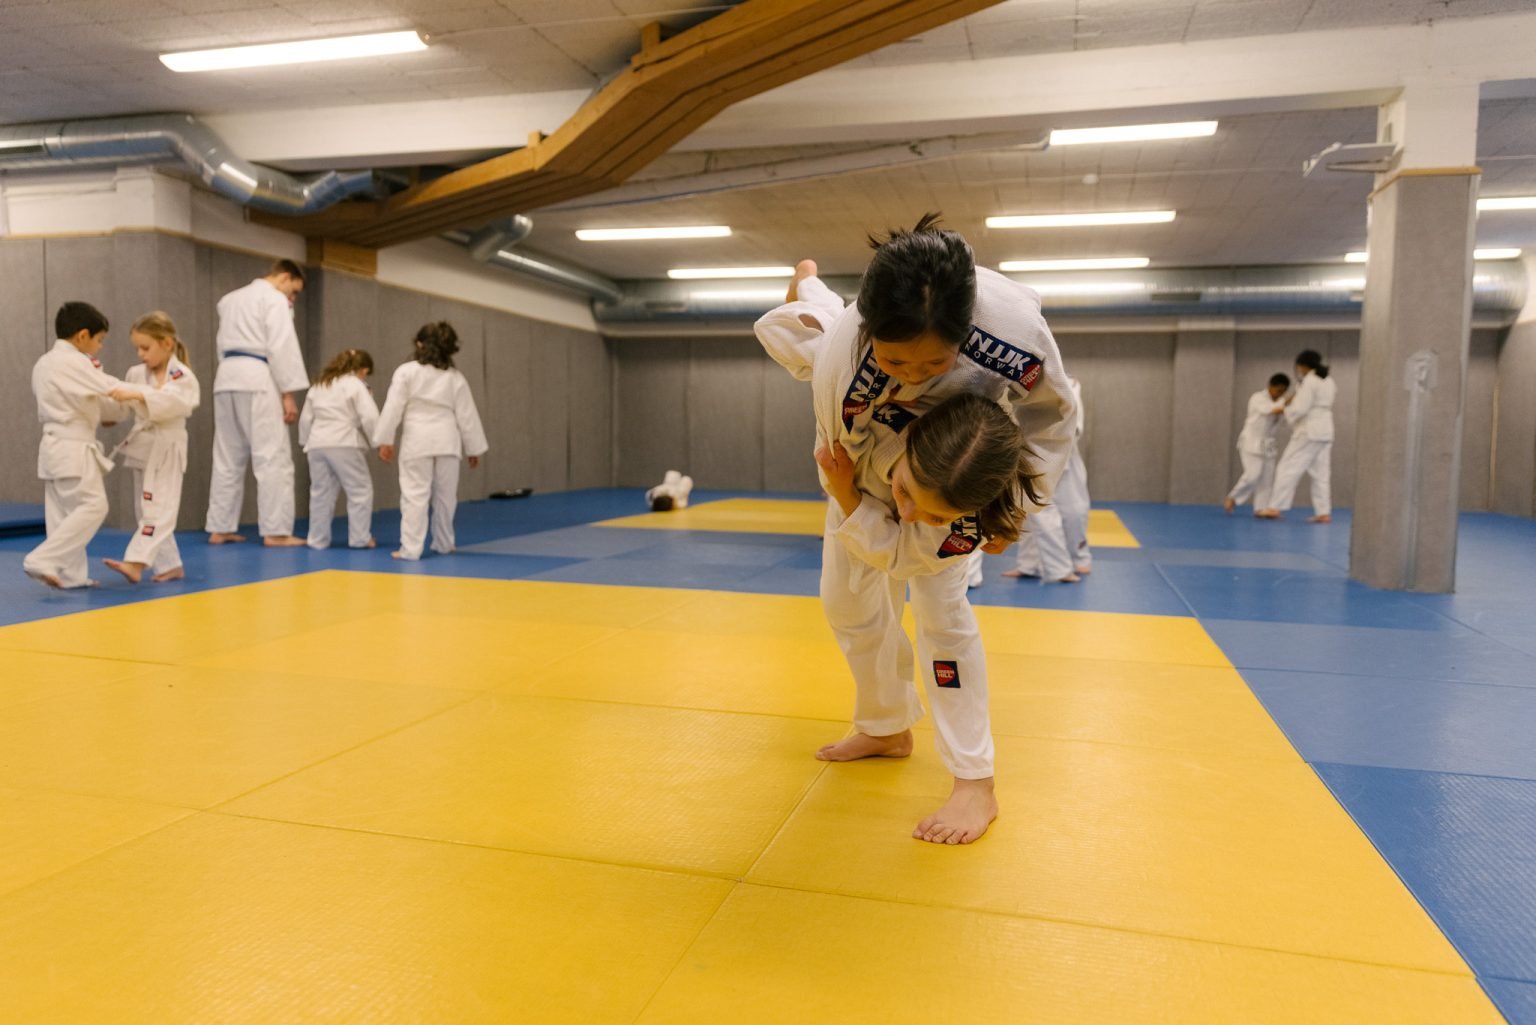 to jenter iført judodrakter utfører bakkekampøvelser i en treningssal med gulvet dekket av madrasser i blått og gult. I bakgrunnen sees andre idrettsutøvere som også trener.